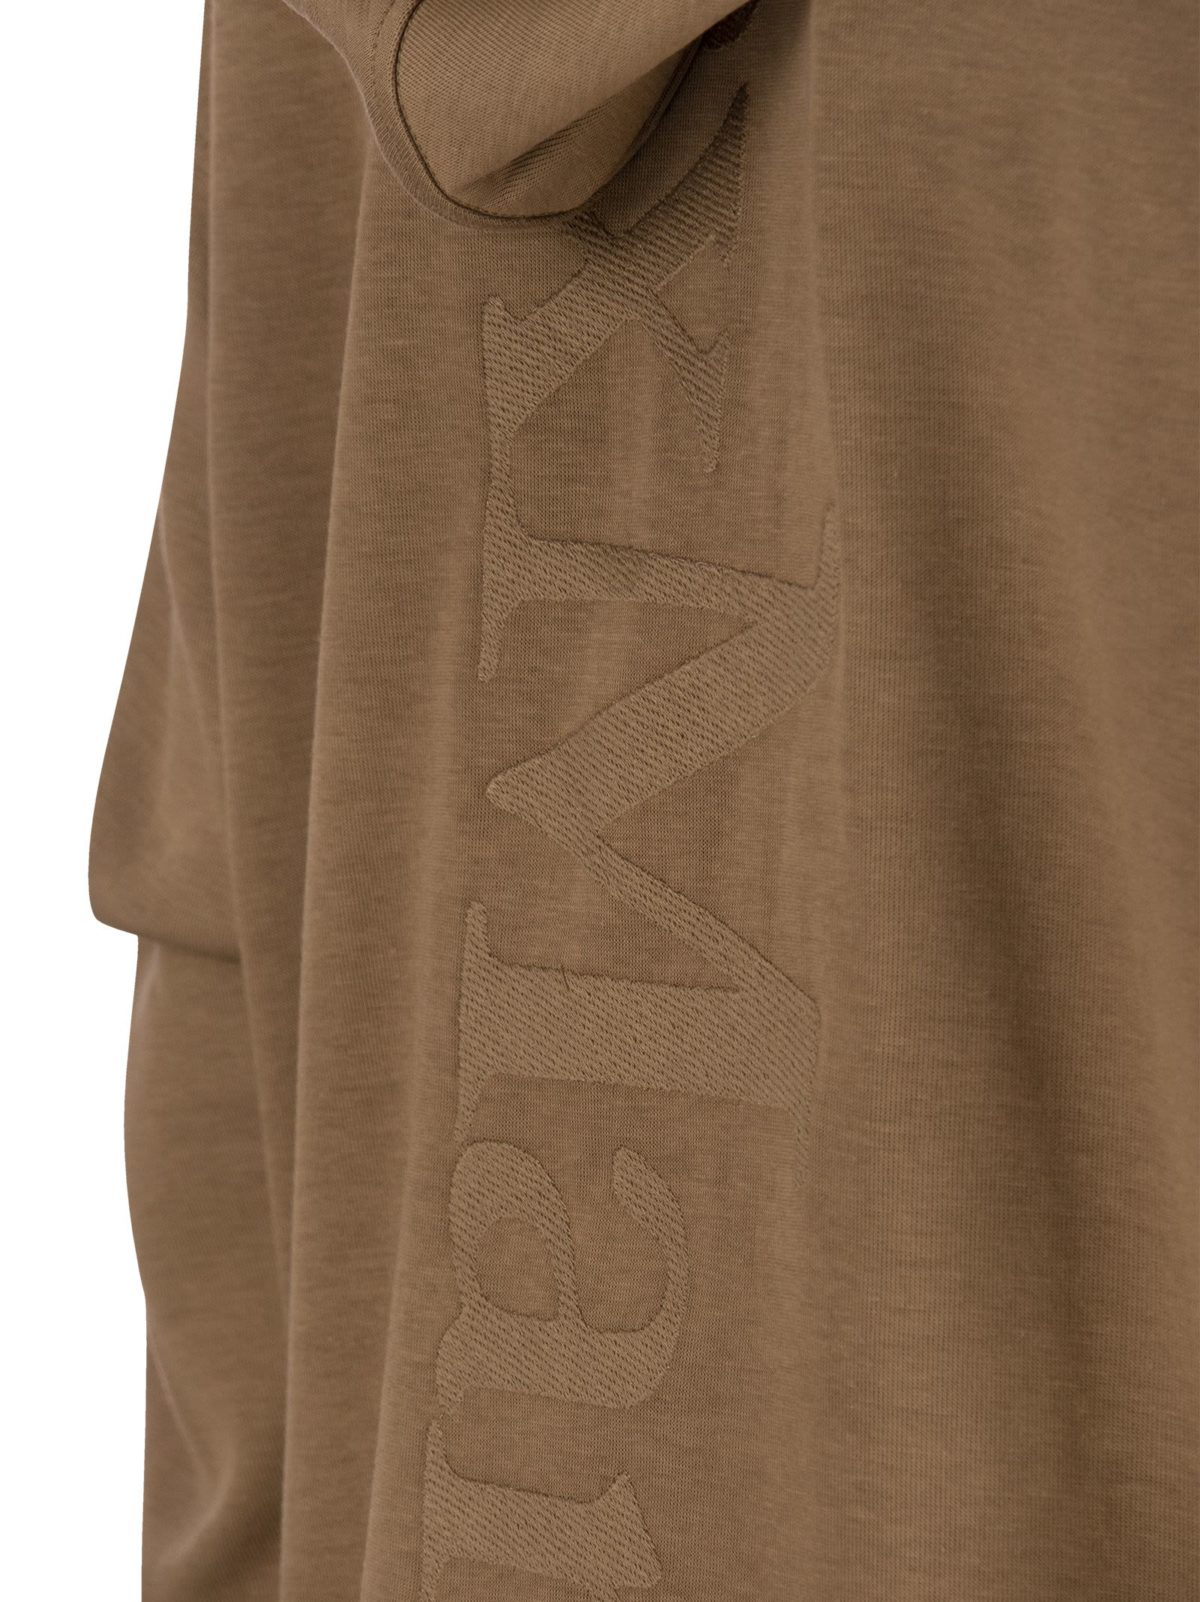 NASTRO - Cotton sweatshirt with zip and hood - Bellettini.com